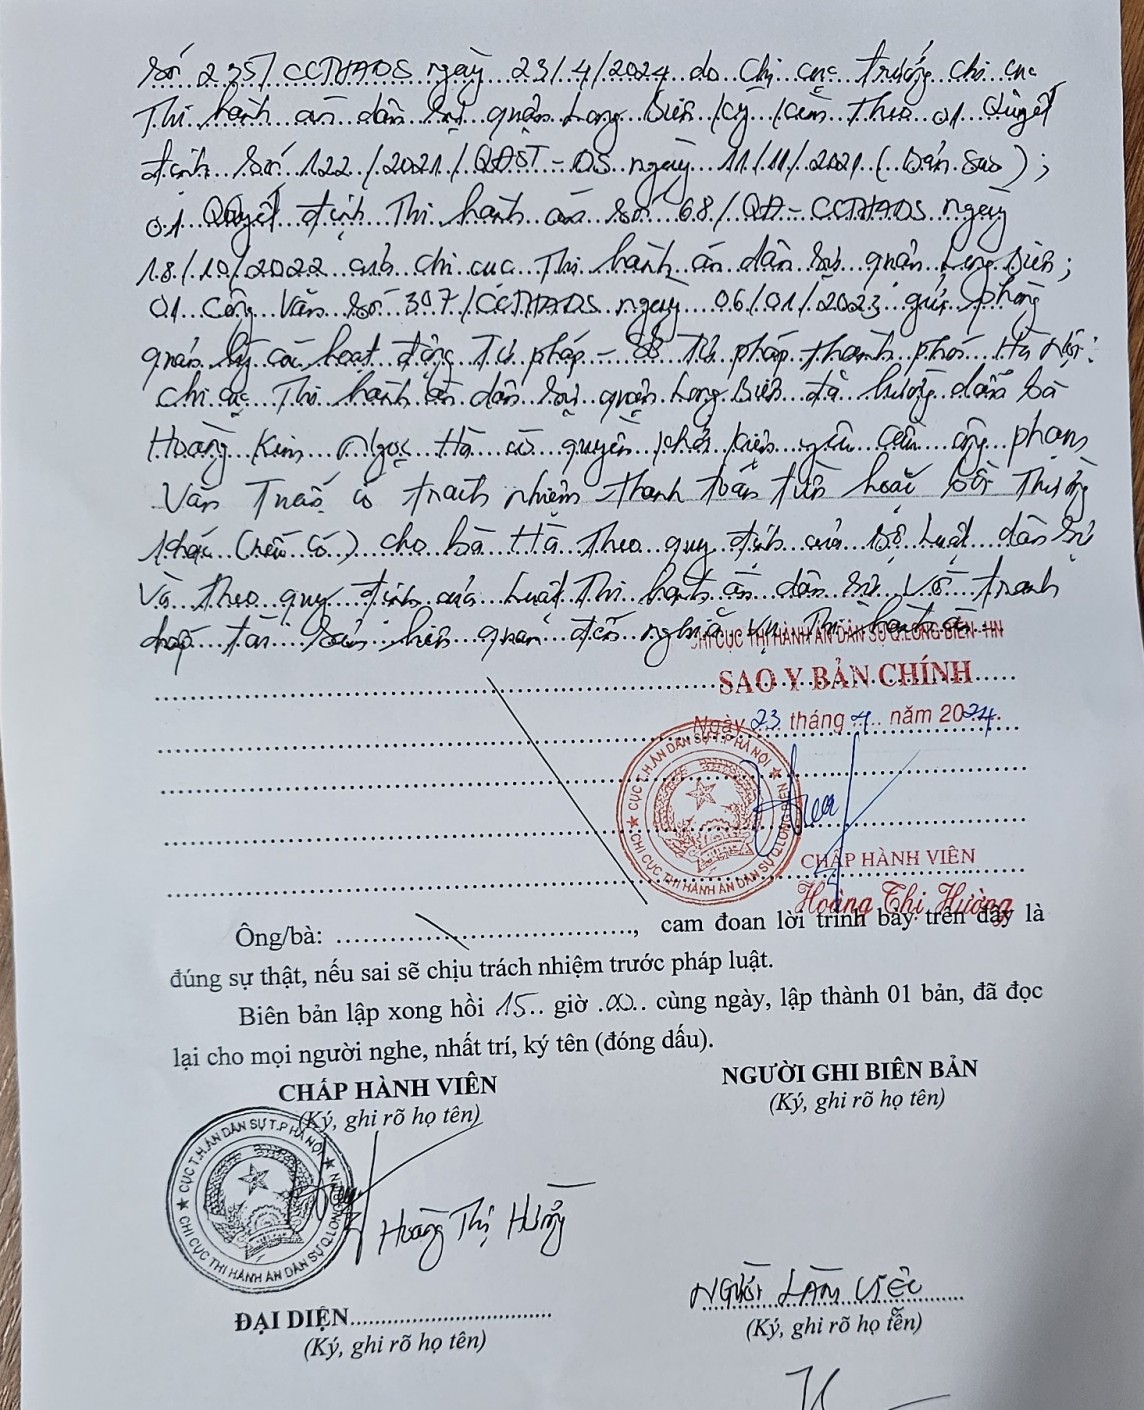 Hộp thư ngày 3/5: Phản ánh về Trung tâm đào tạo EAC, Chi cục Thi hành án quận Long Biên